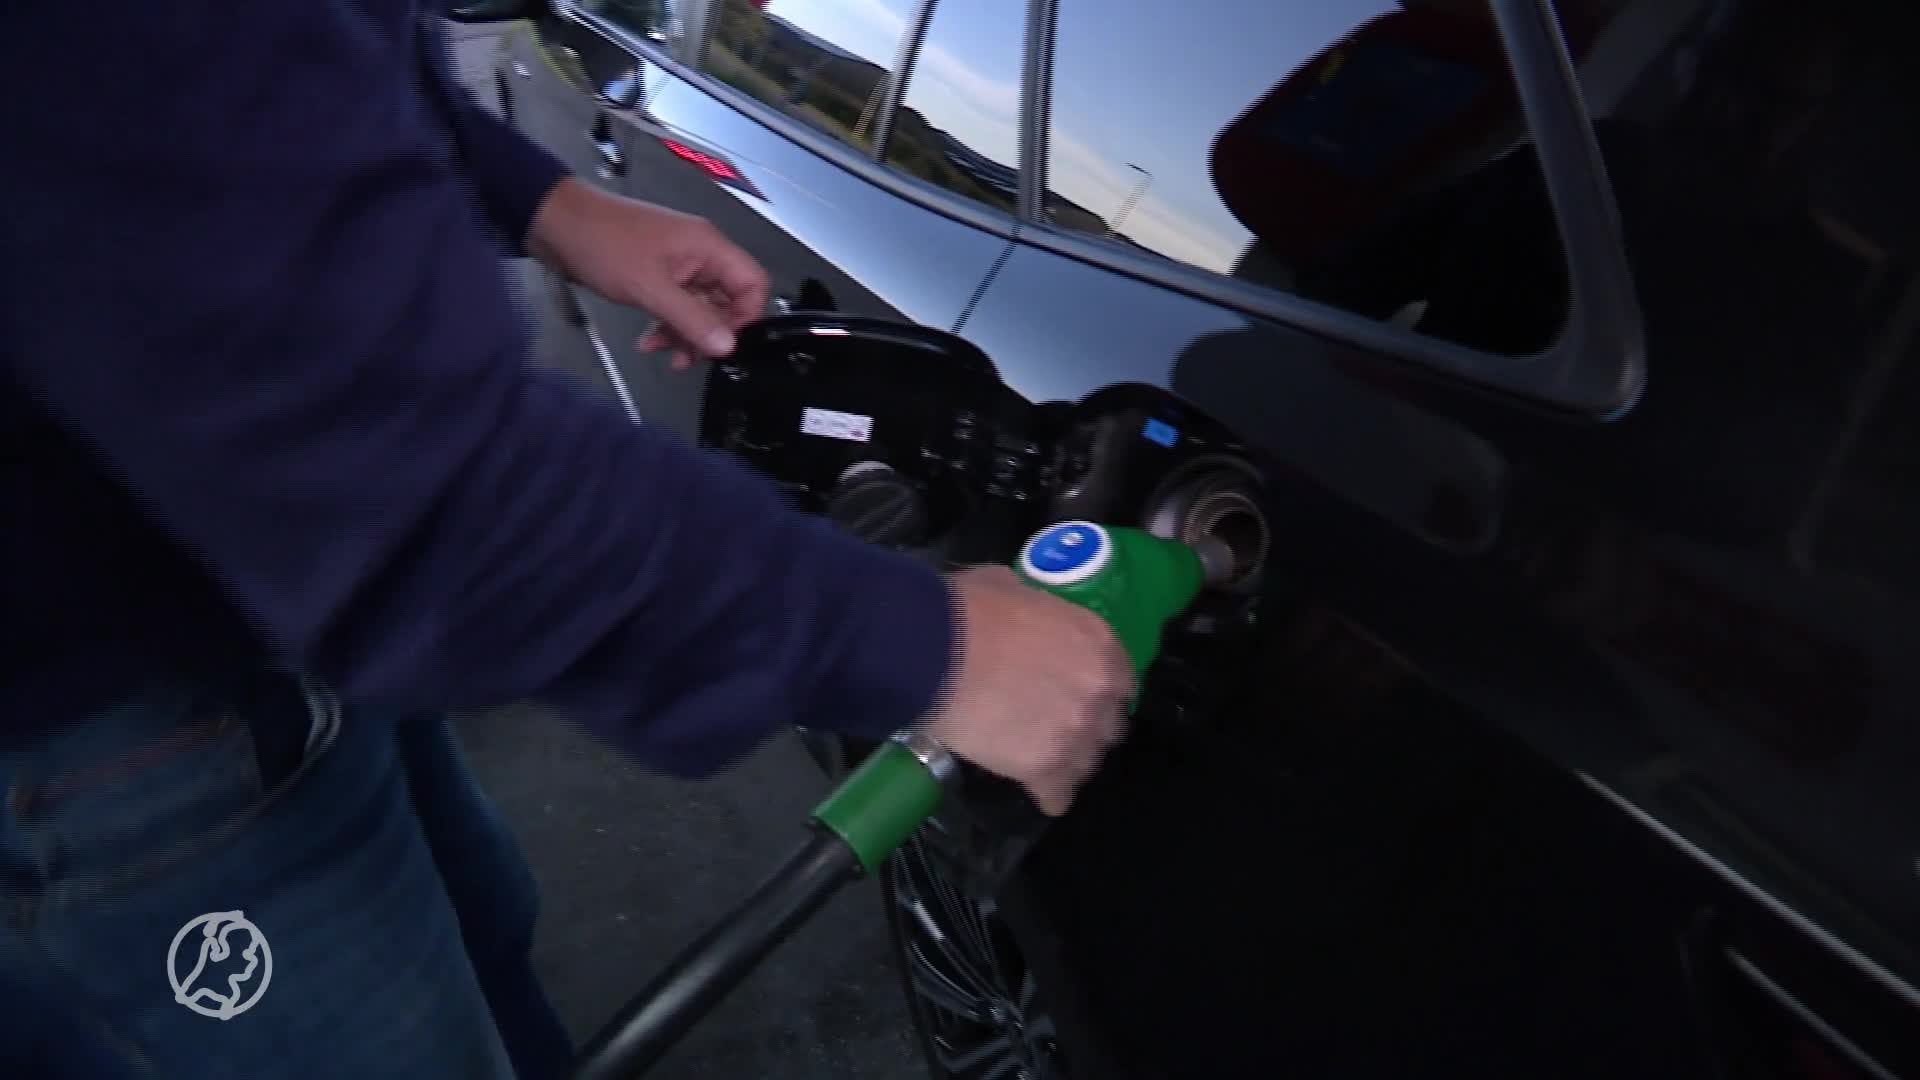 Fors meer lappen aan de pomp: benzineprijs schiet zonder ingrijpen kabinet met 21 cent omhoog